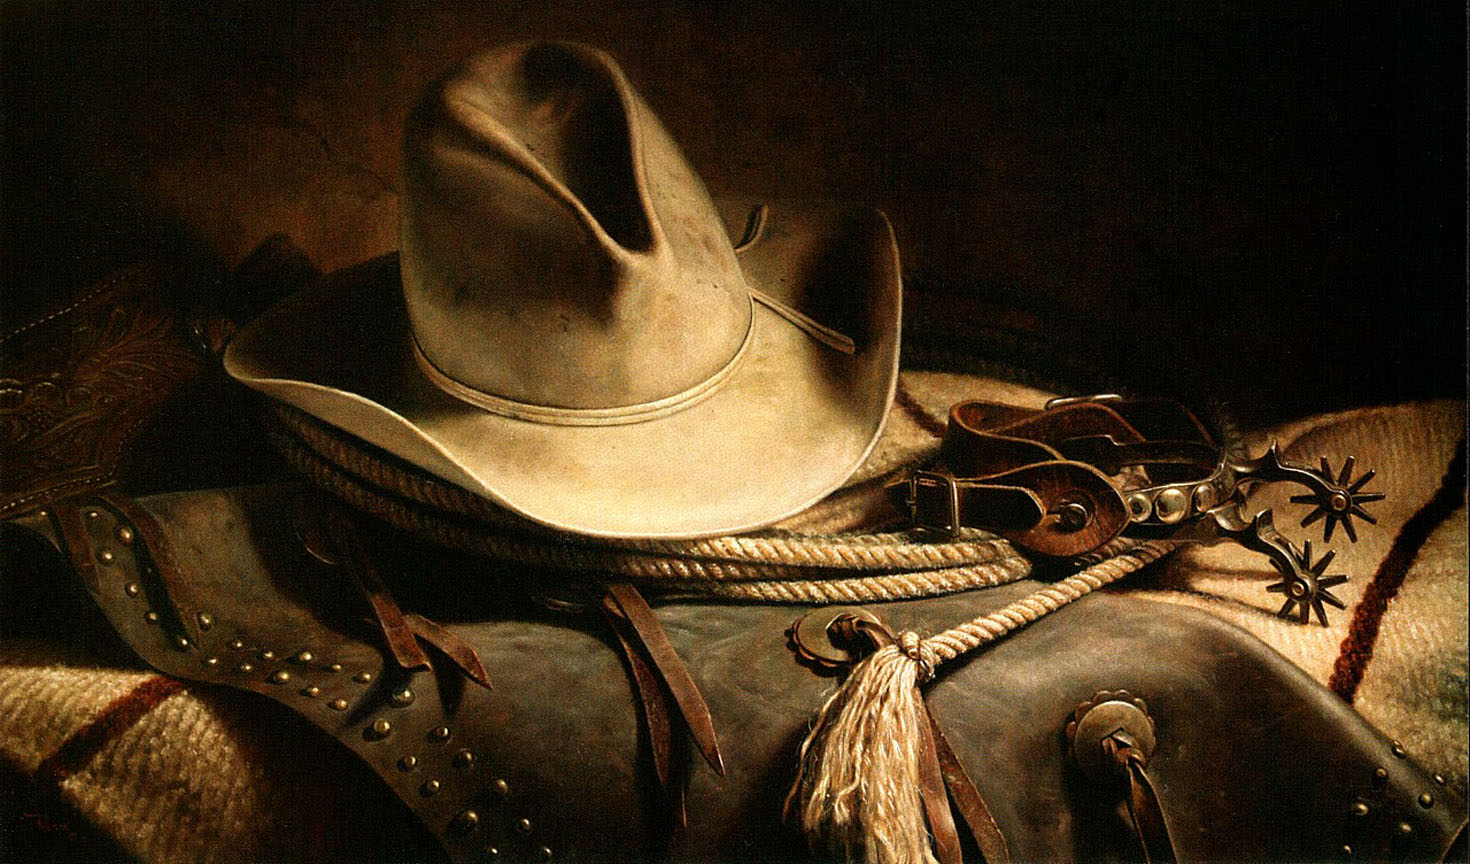 Western Cowboys Drawings Wallpaper